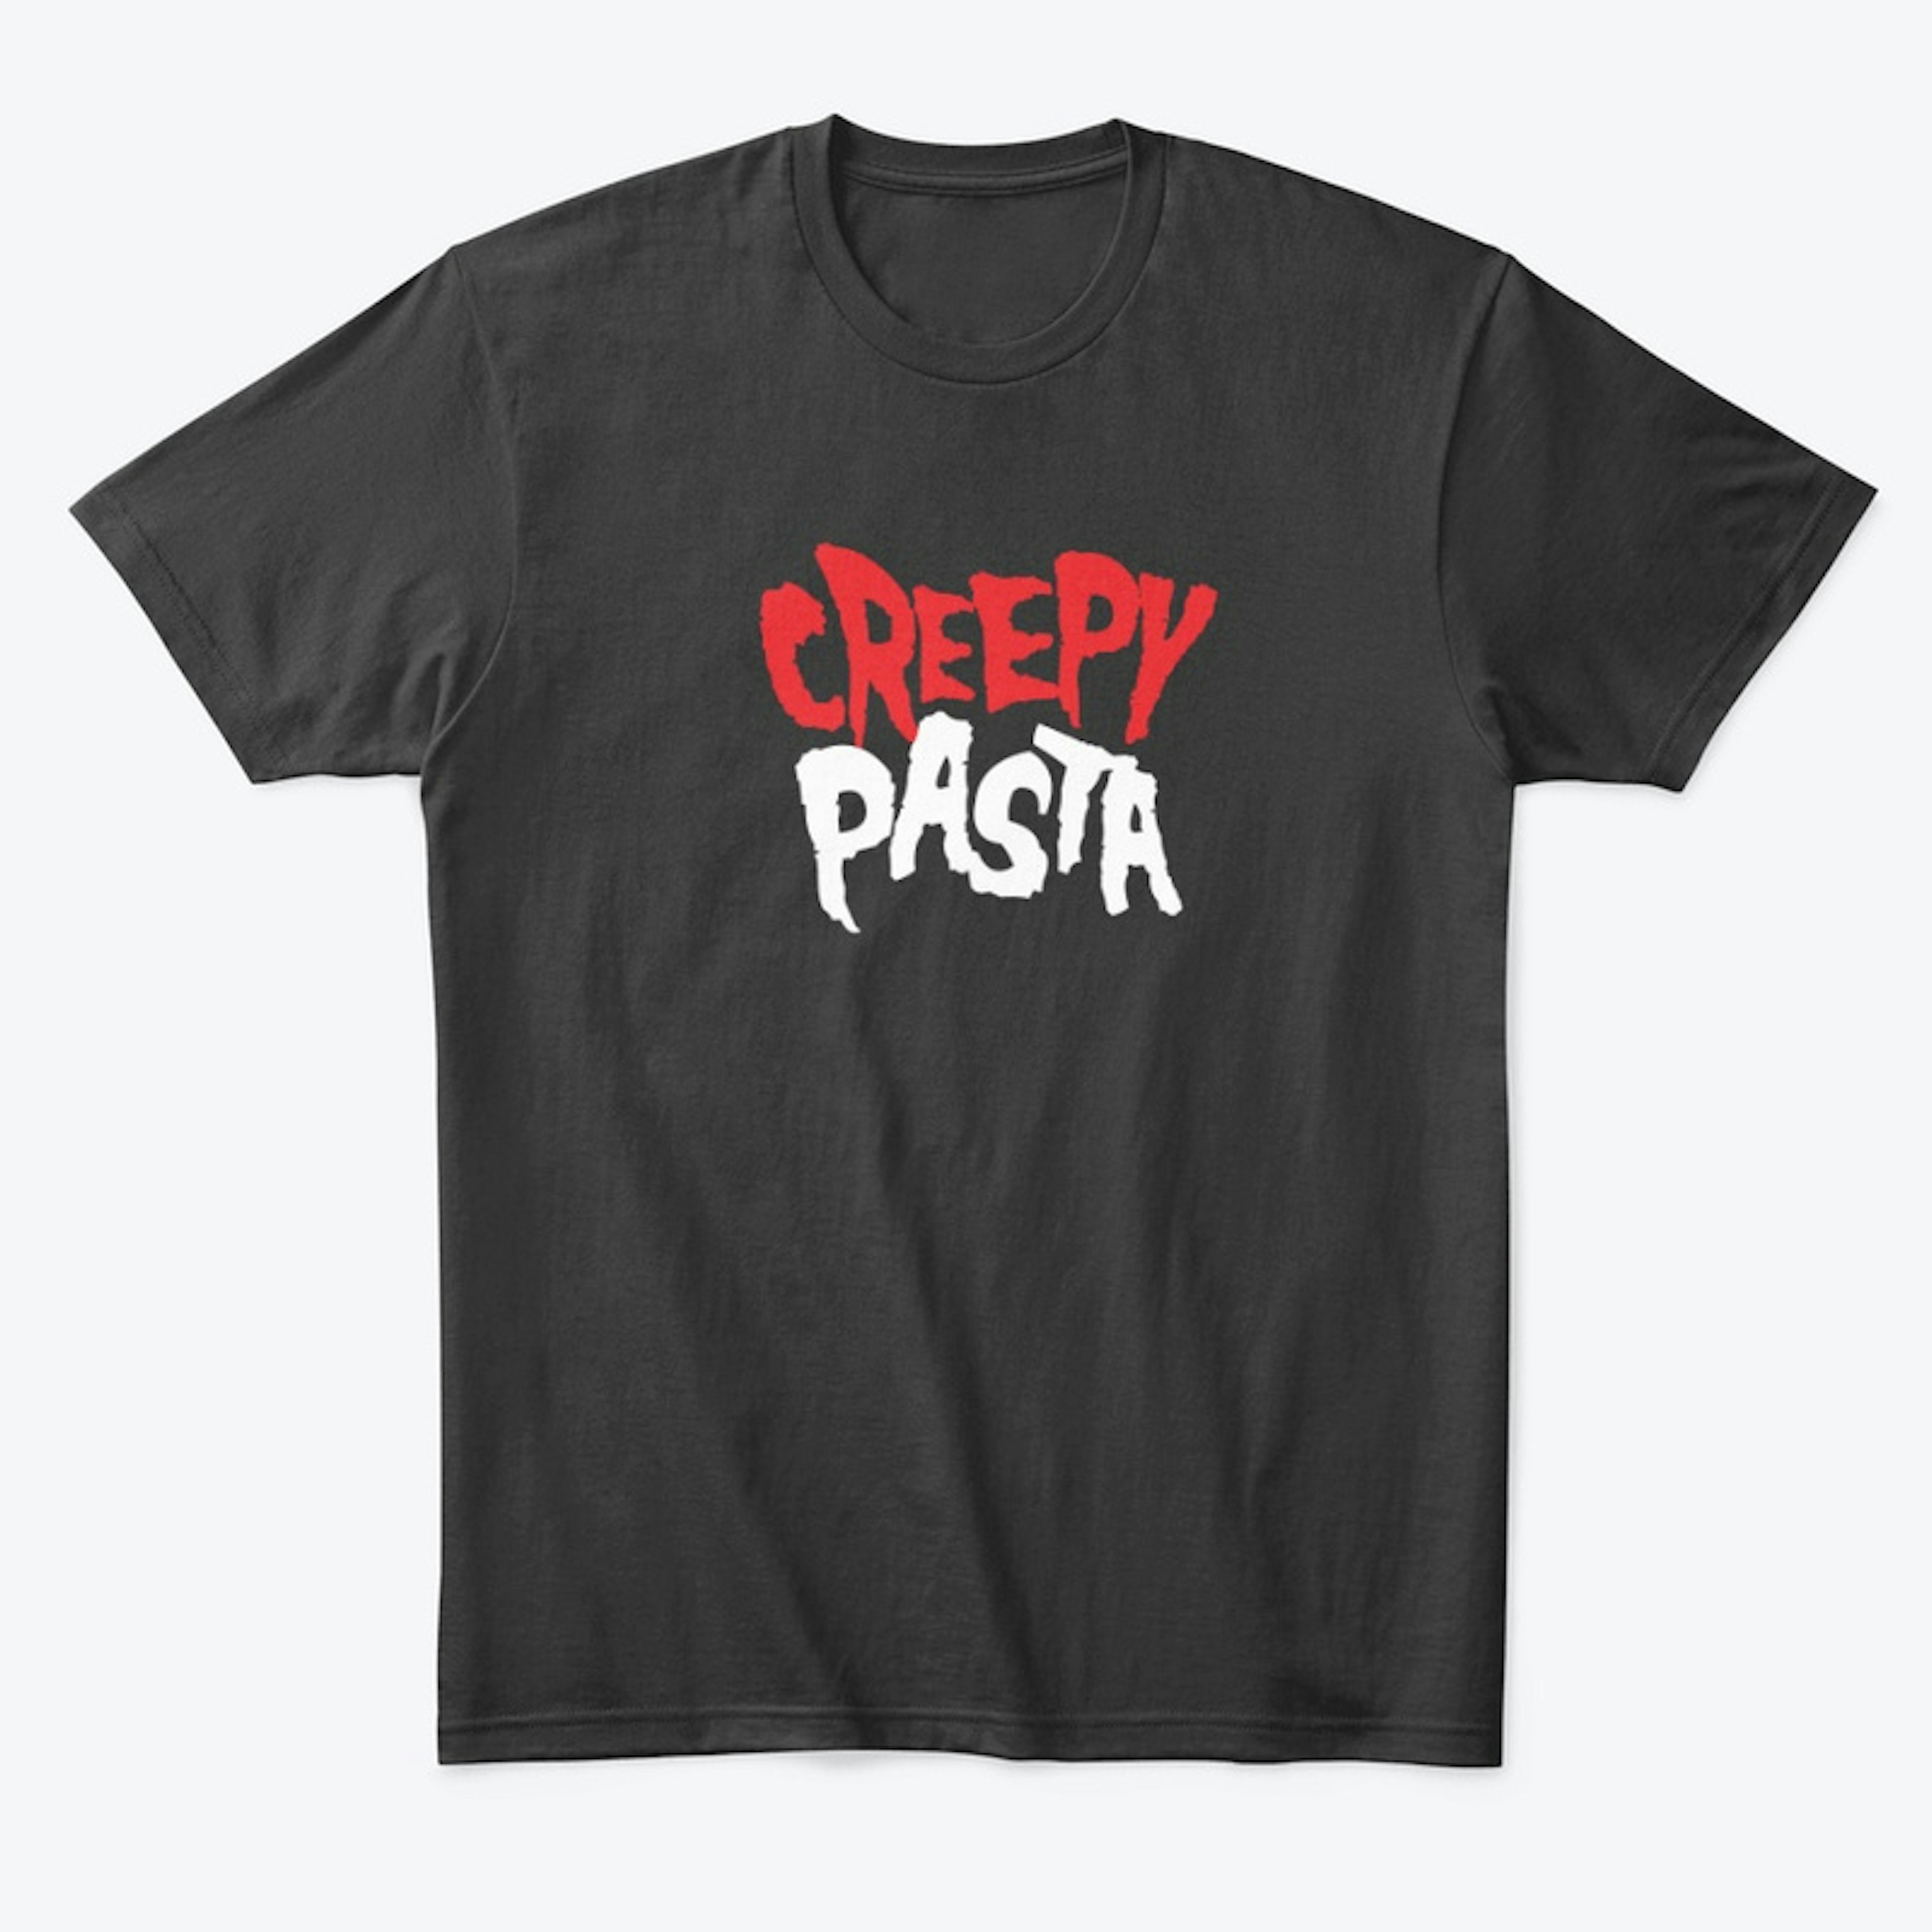 Creepypasta.com Collection